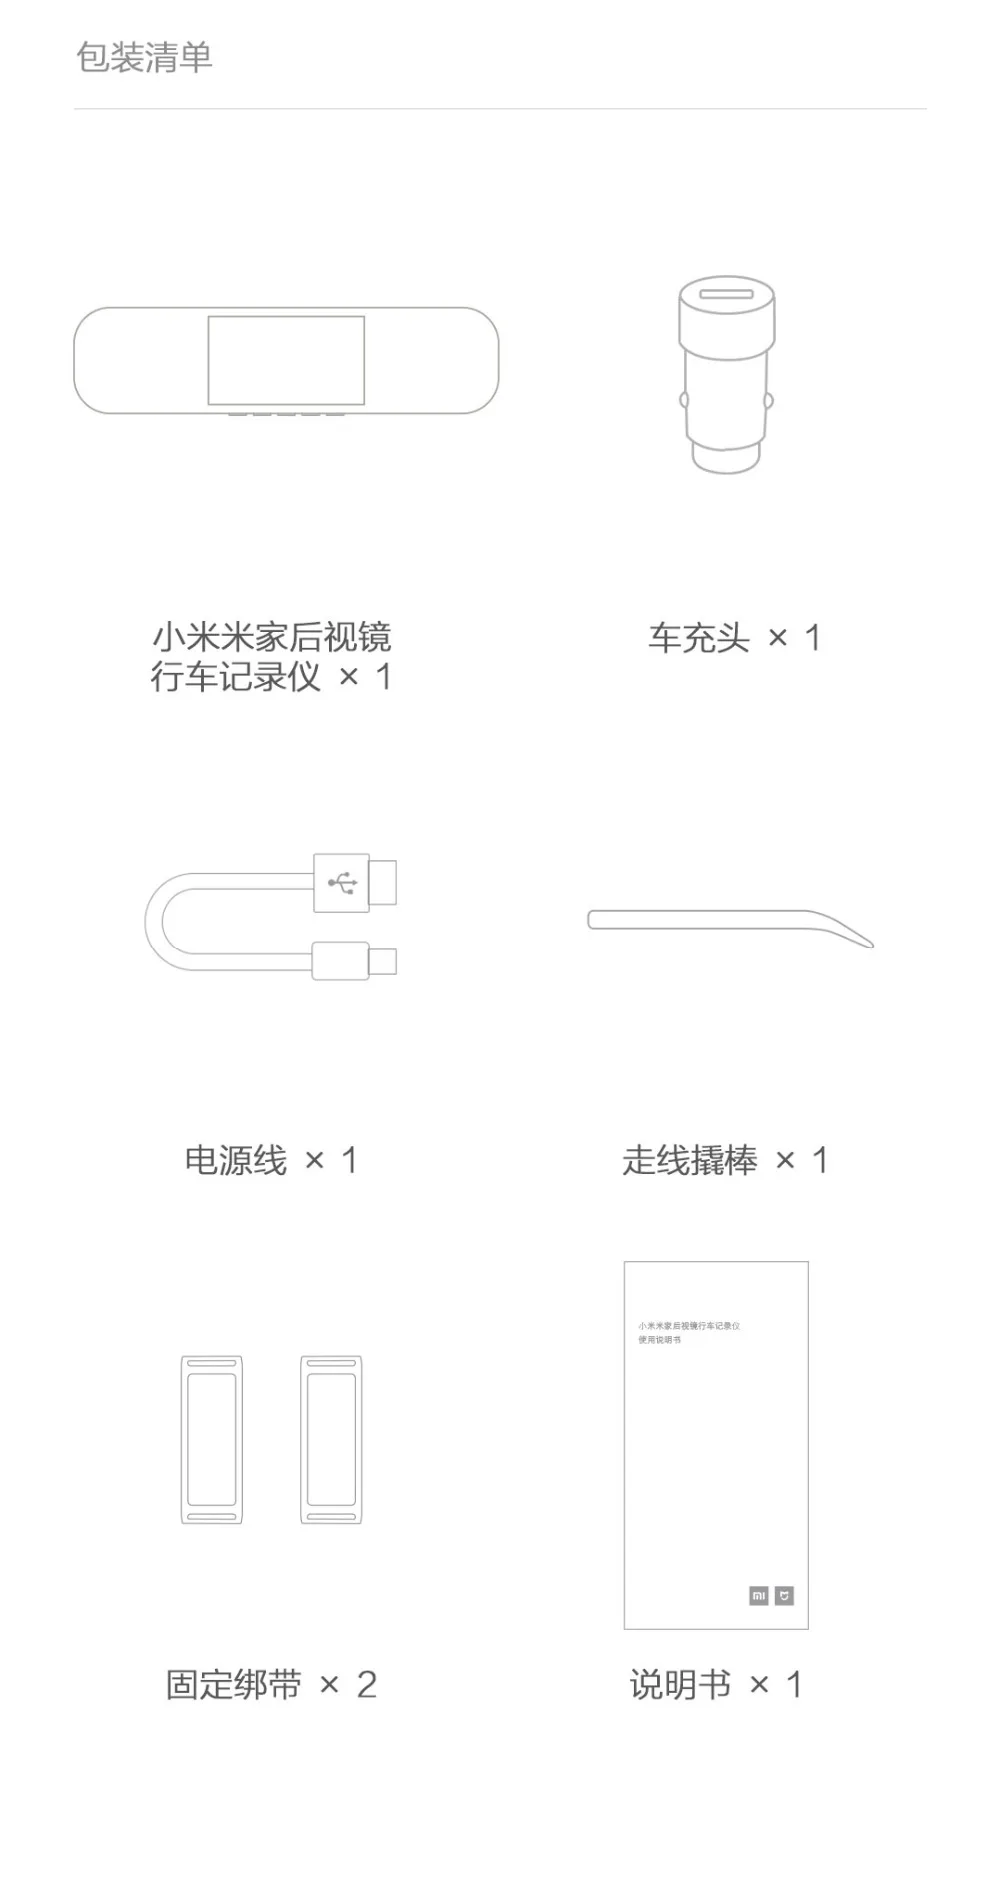 Xiaomi Mijia зеркало Автомобильная камера заднего вида Смарт Камера вождения рекордер 1080P HD 5 дюймов ips экран IMX323 датчик изображения для автомобиля